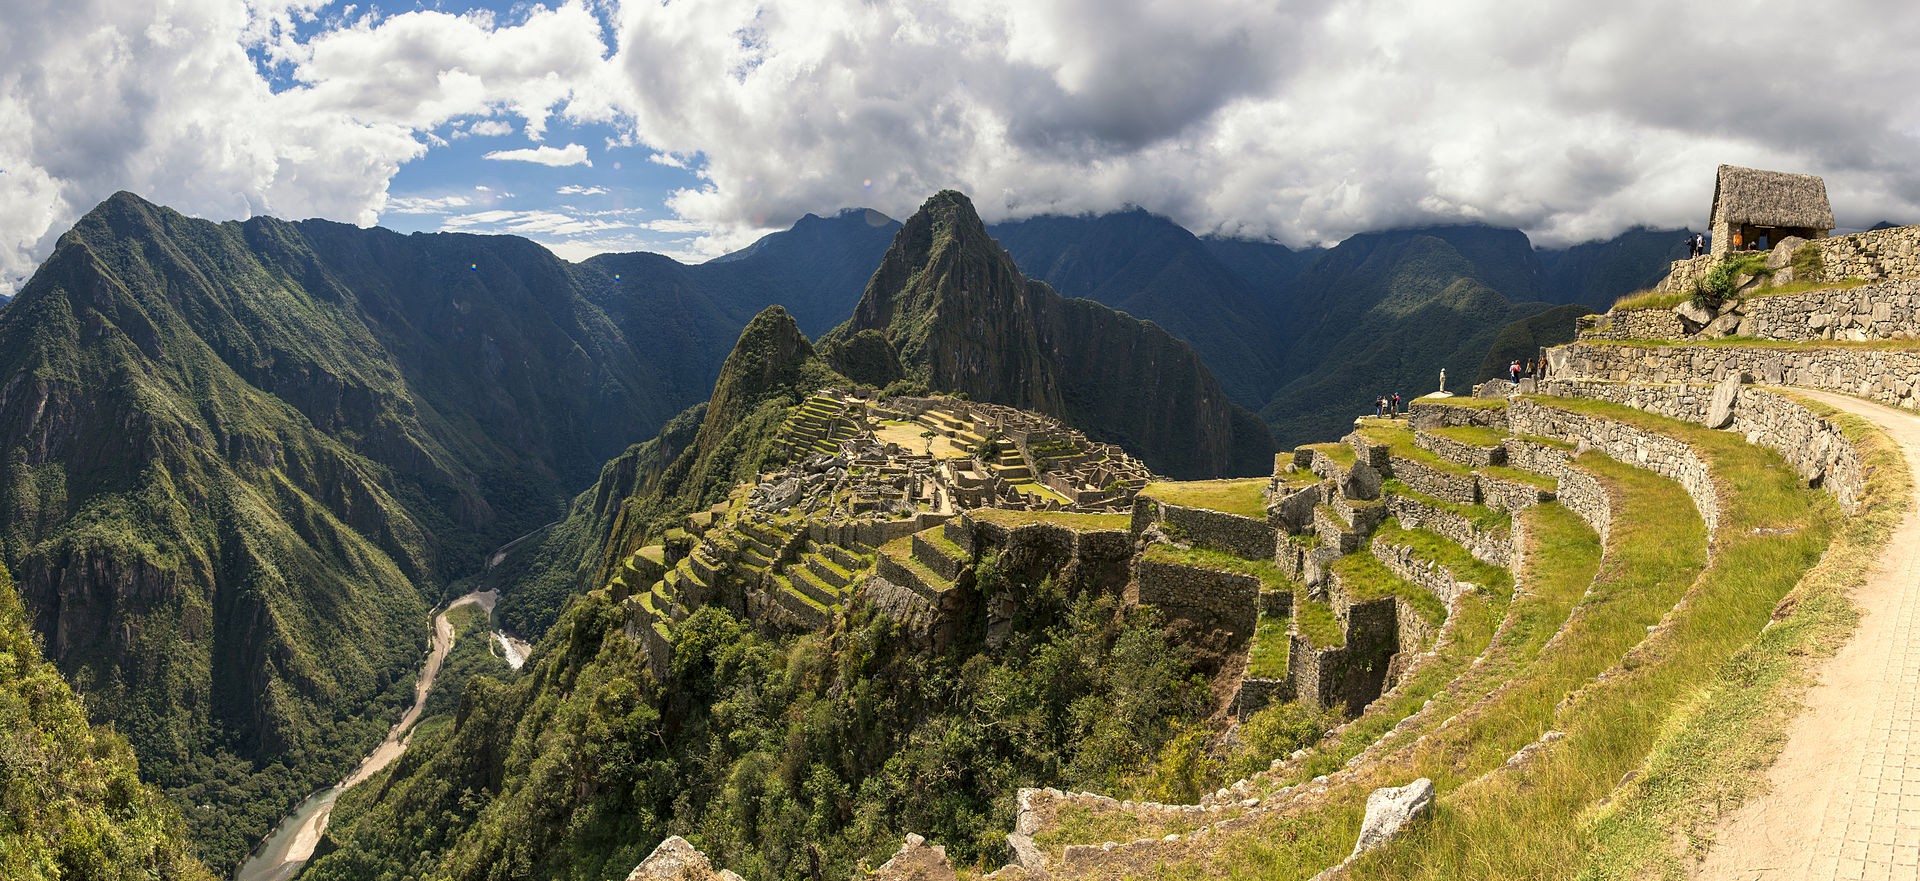 Especialistas temem projeto de construir aeroporto próximo a Machu Picchu - Revista Galileu | Ciência